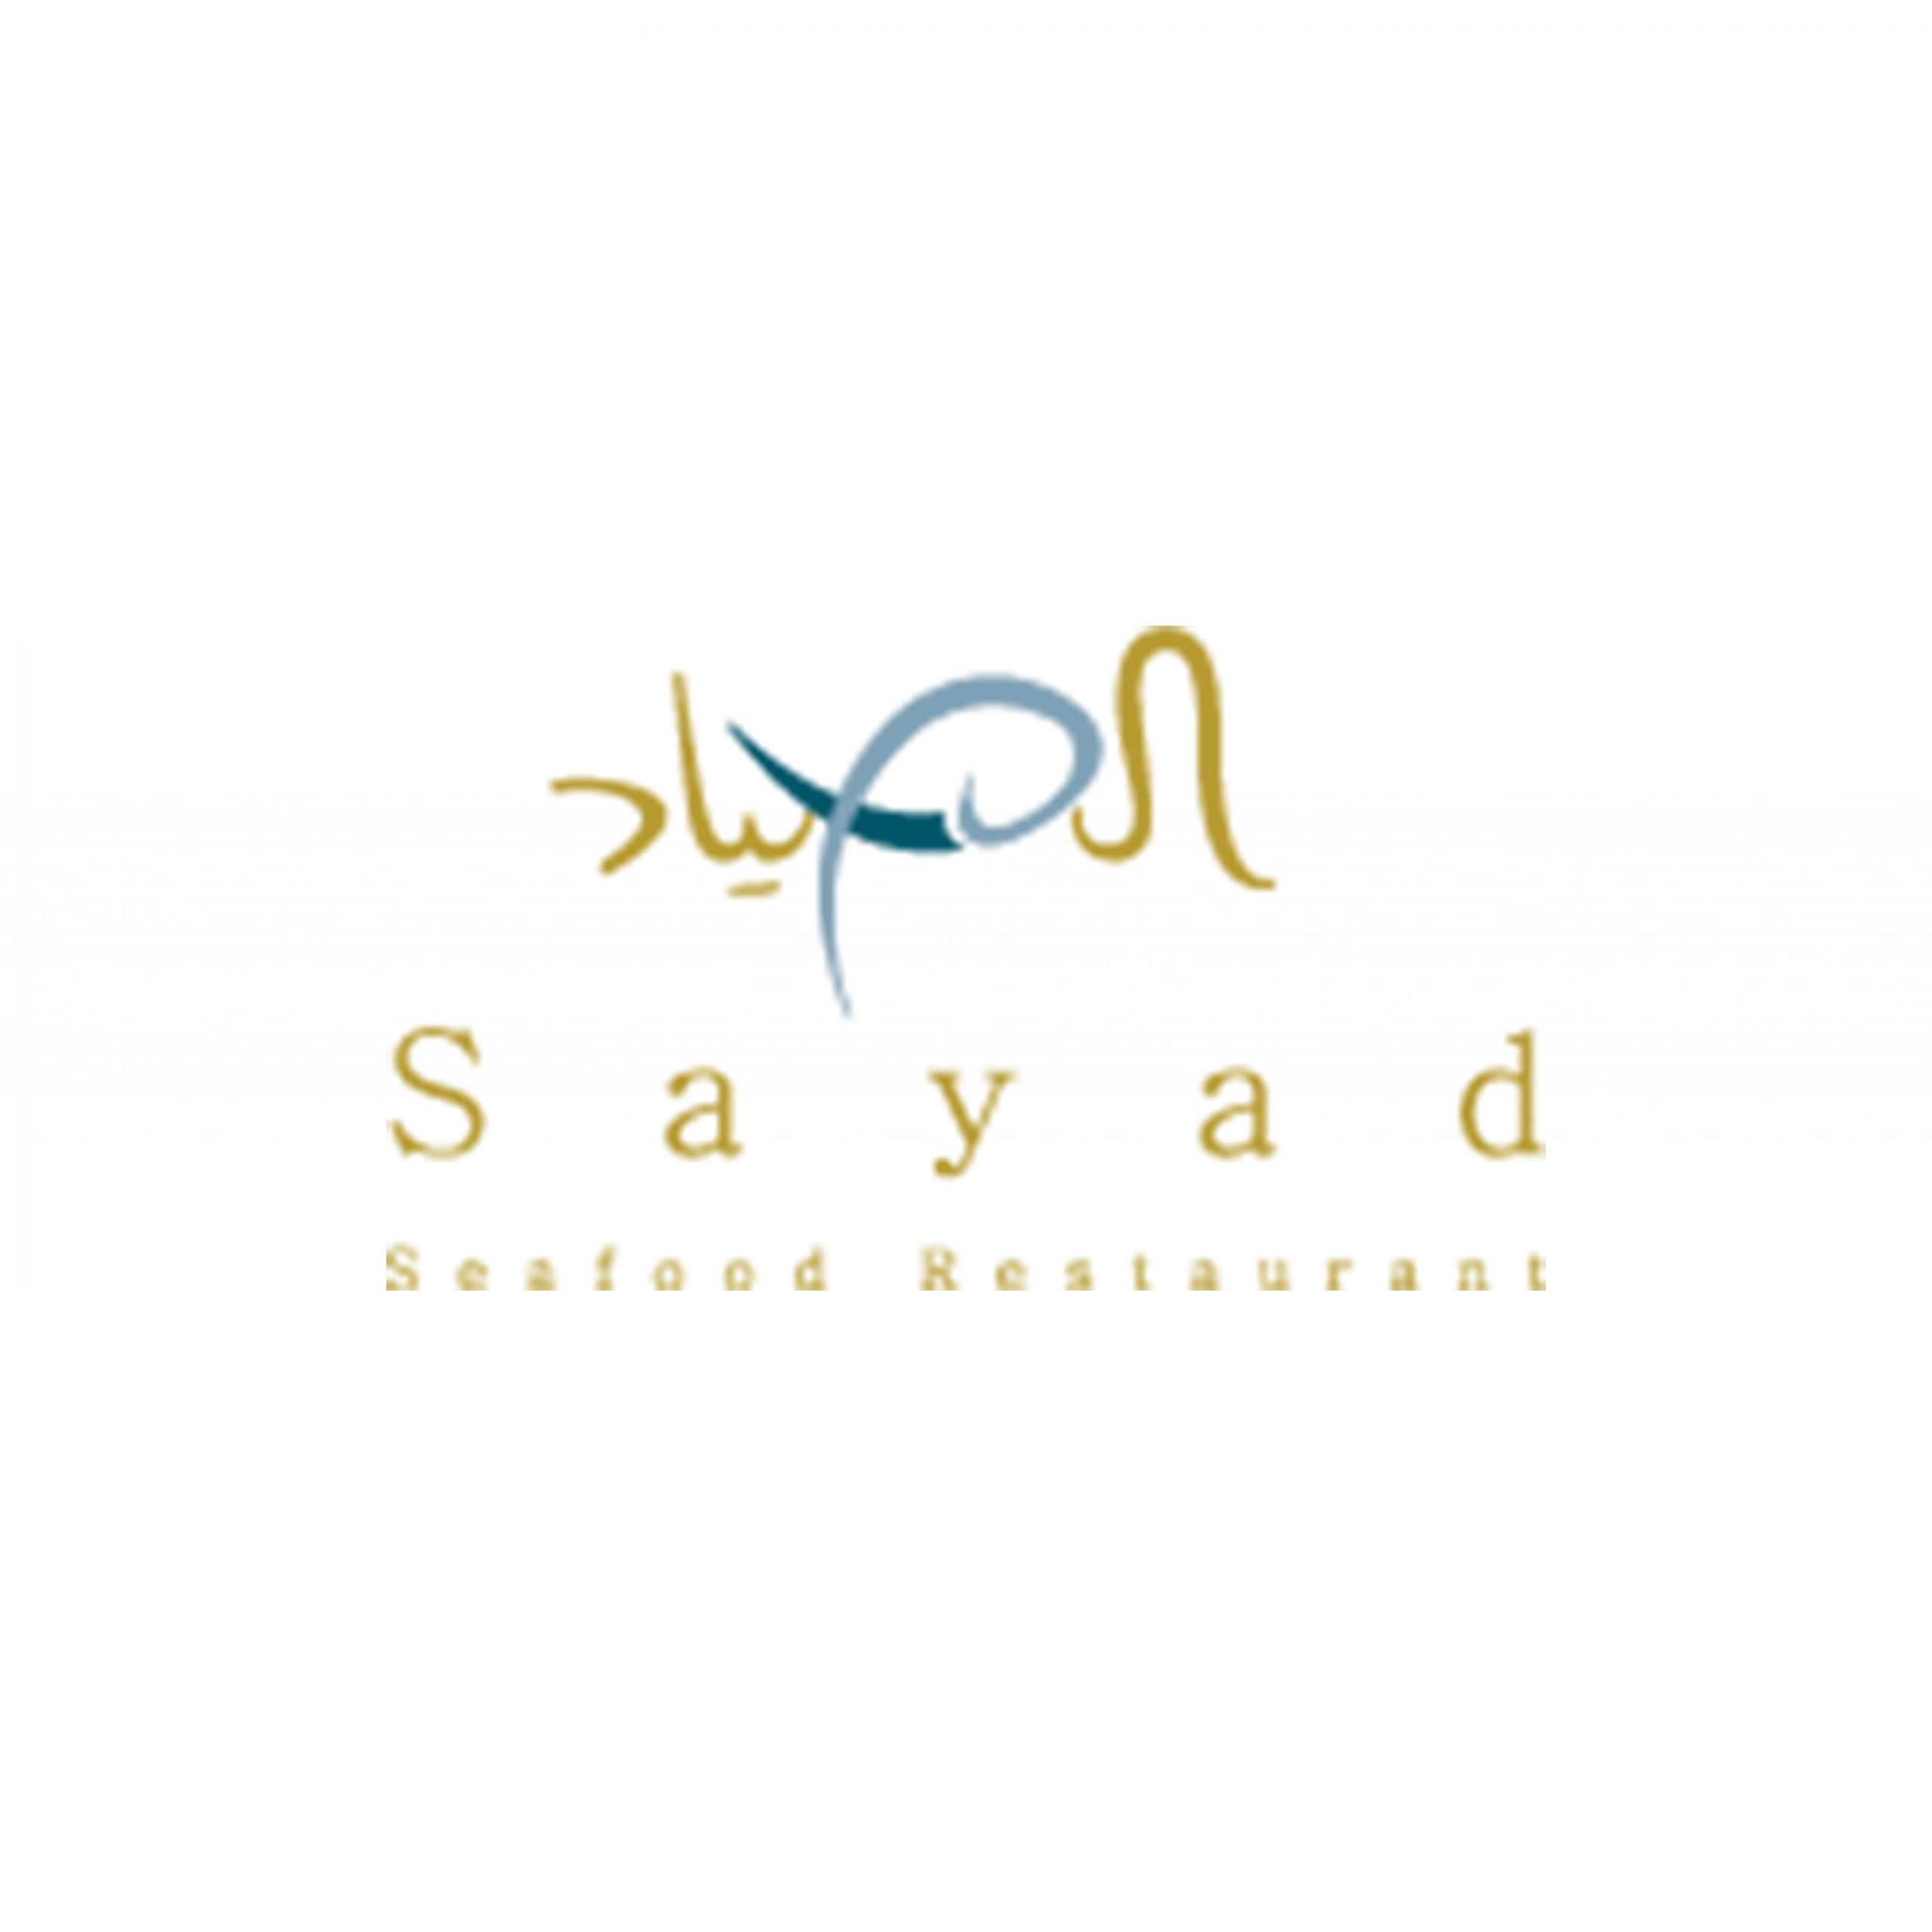 Sayad - Coming Soon in UAE